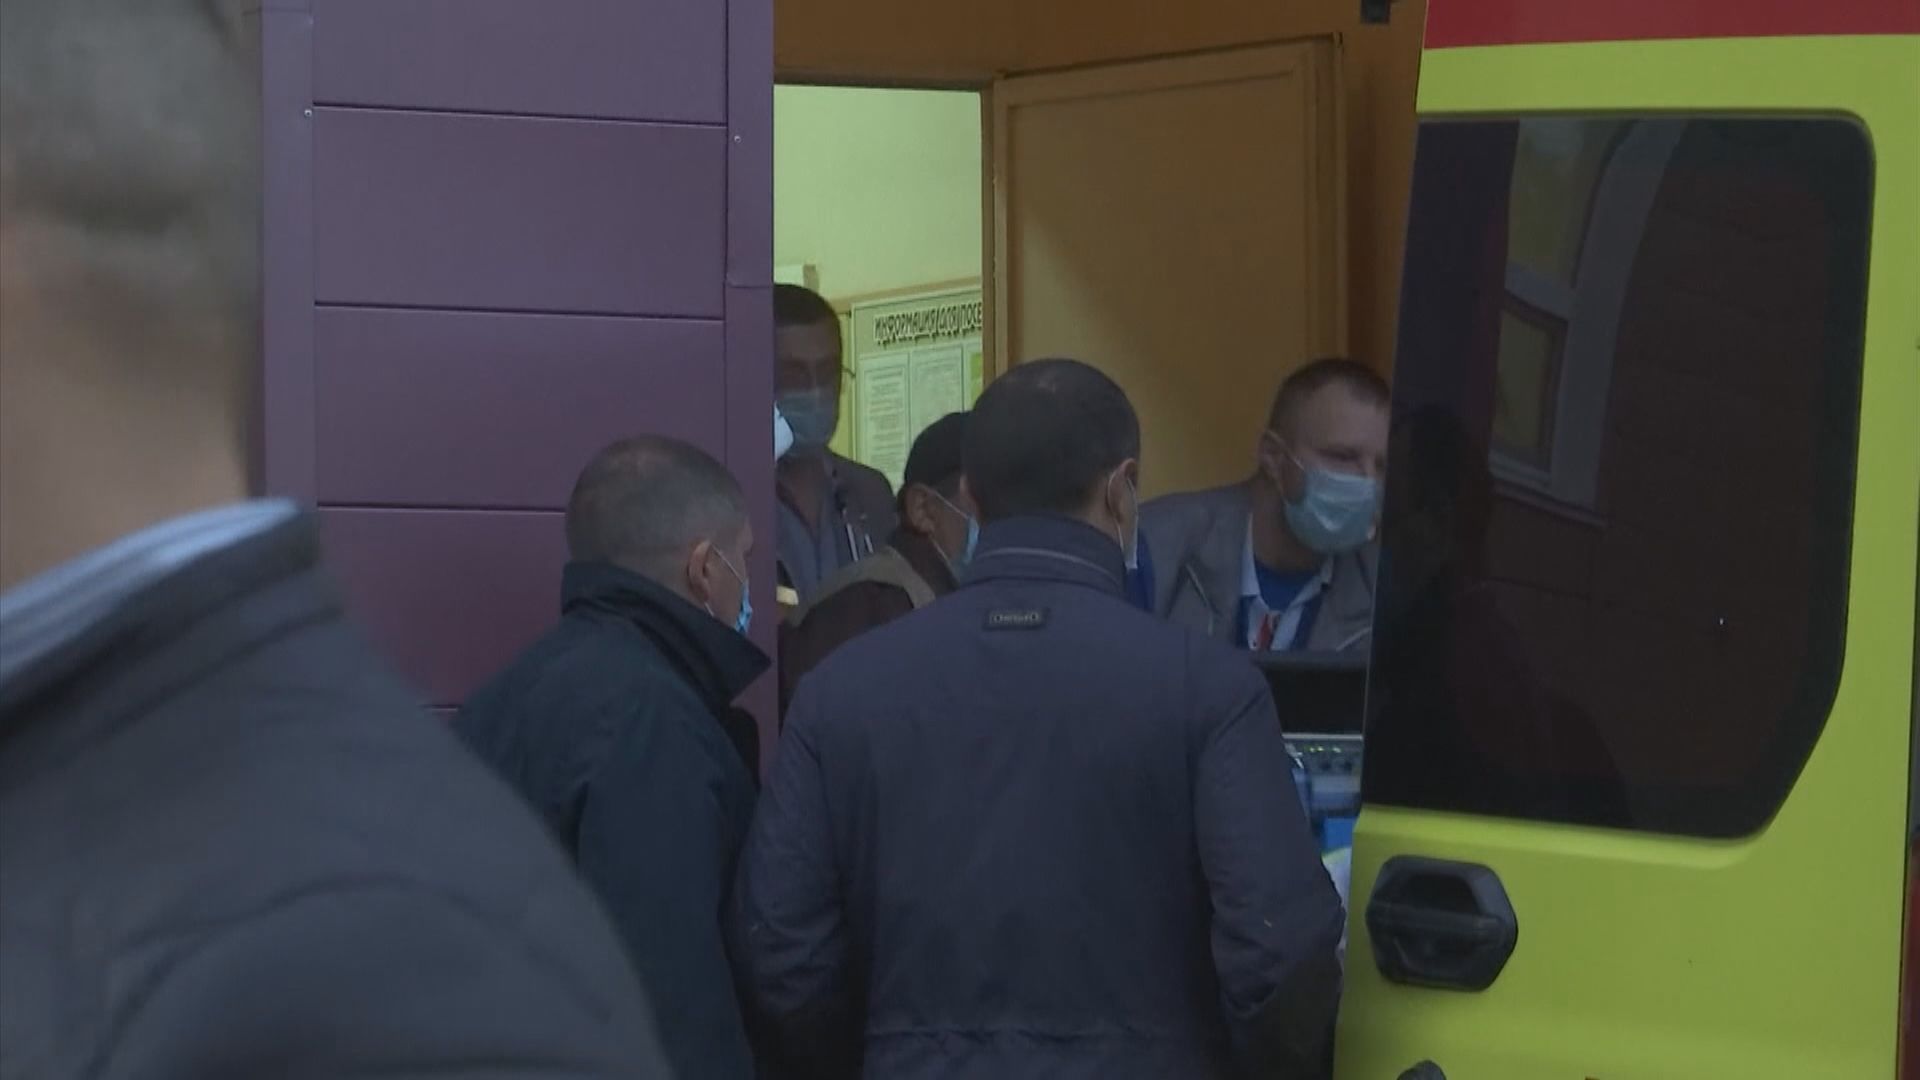 俄反對派領袖納瓦爾尼乘坐醫療專機到德國就醫